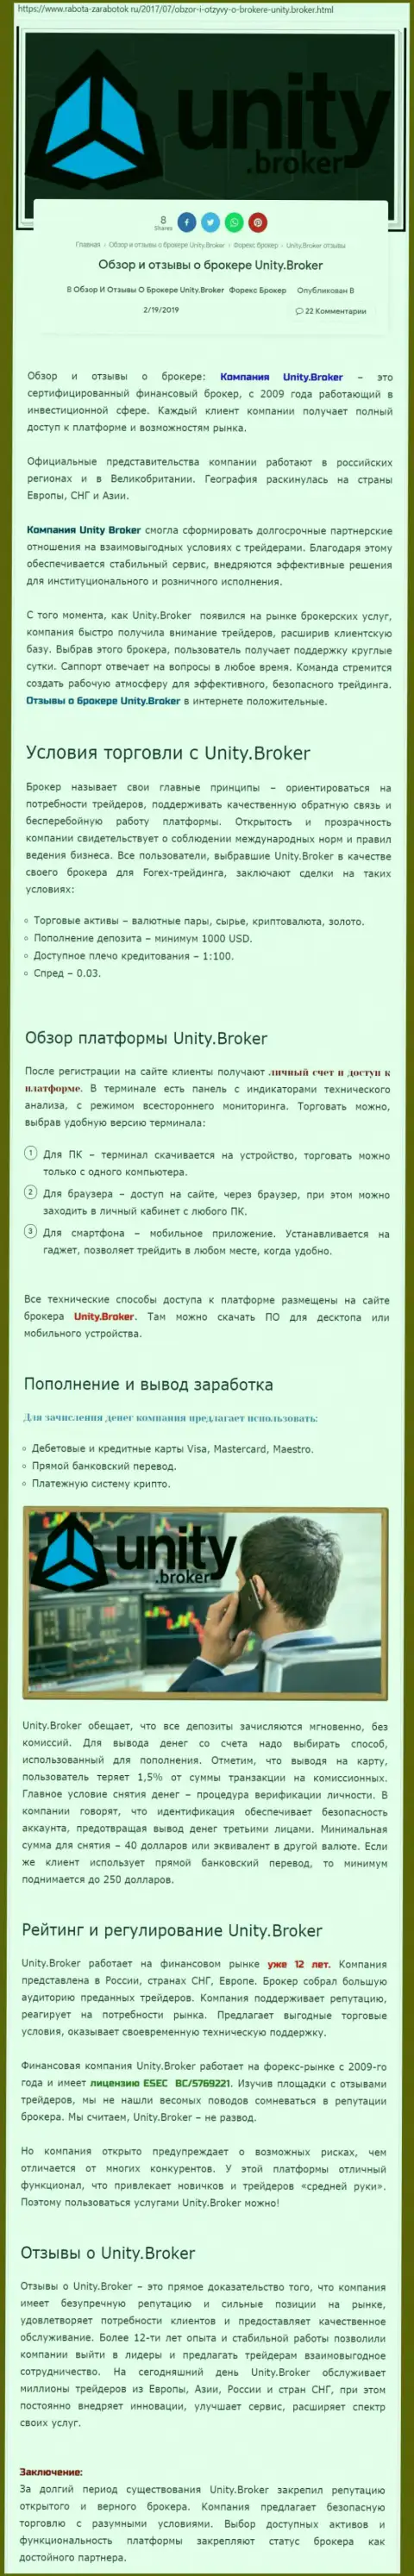 Обзорная информация Forex дилинговой организации Юнити Брокер на веб-сервисе Rabota-Zarabotok Ru